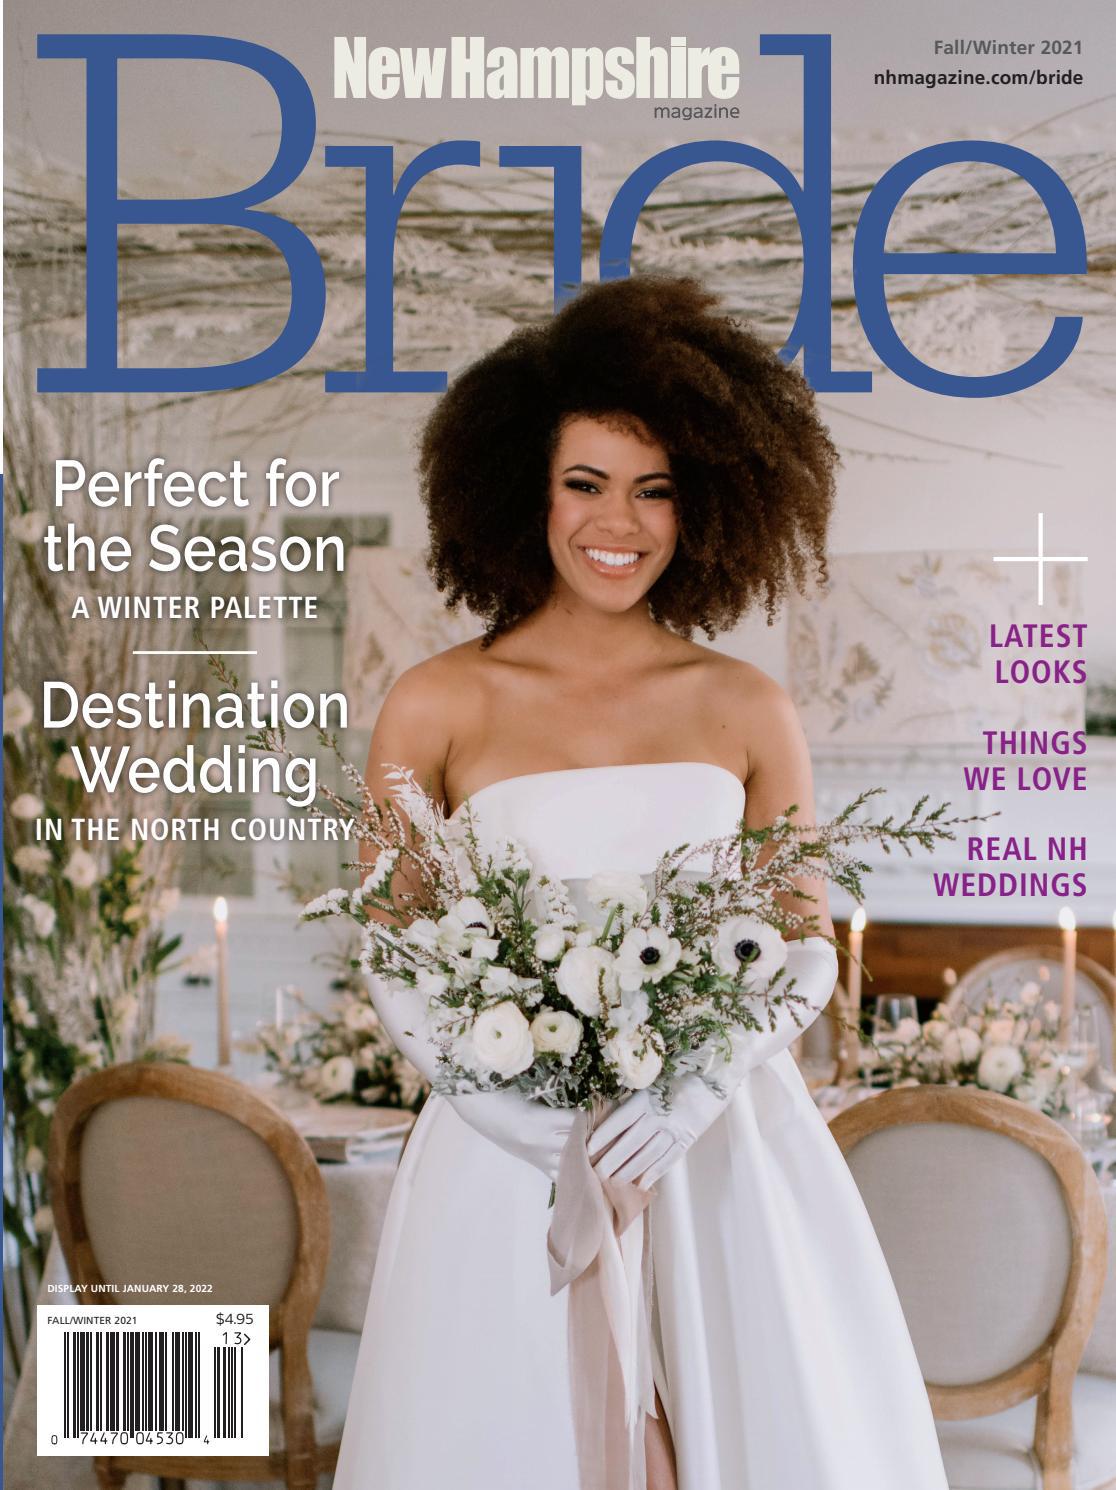 New Hampshire Magazine&#x27;s Bride Fall-Winter 2021